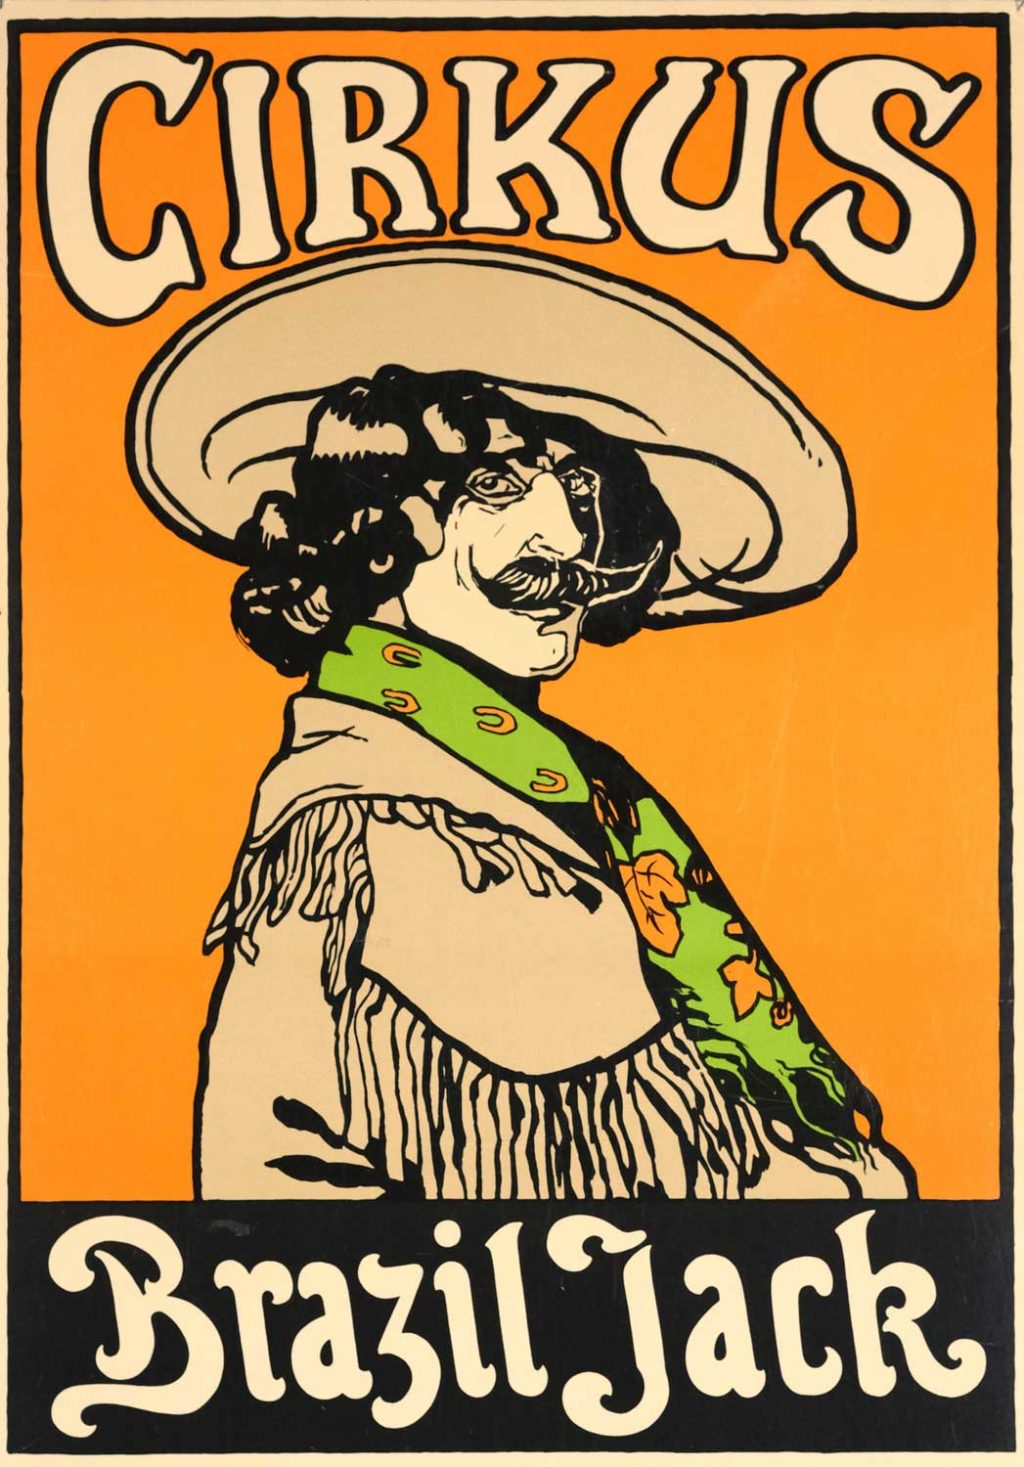 Affisch för Cirkus Brazil Jack. Reproduktion från Cirkusakademiens samlingar